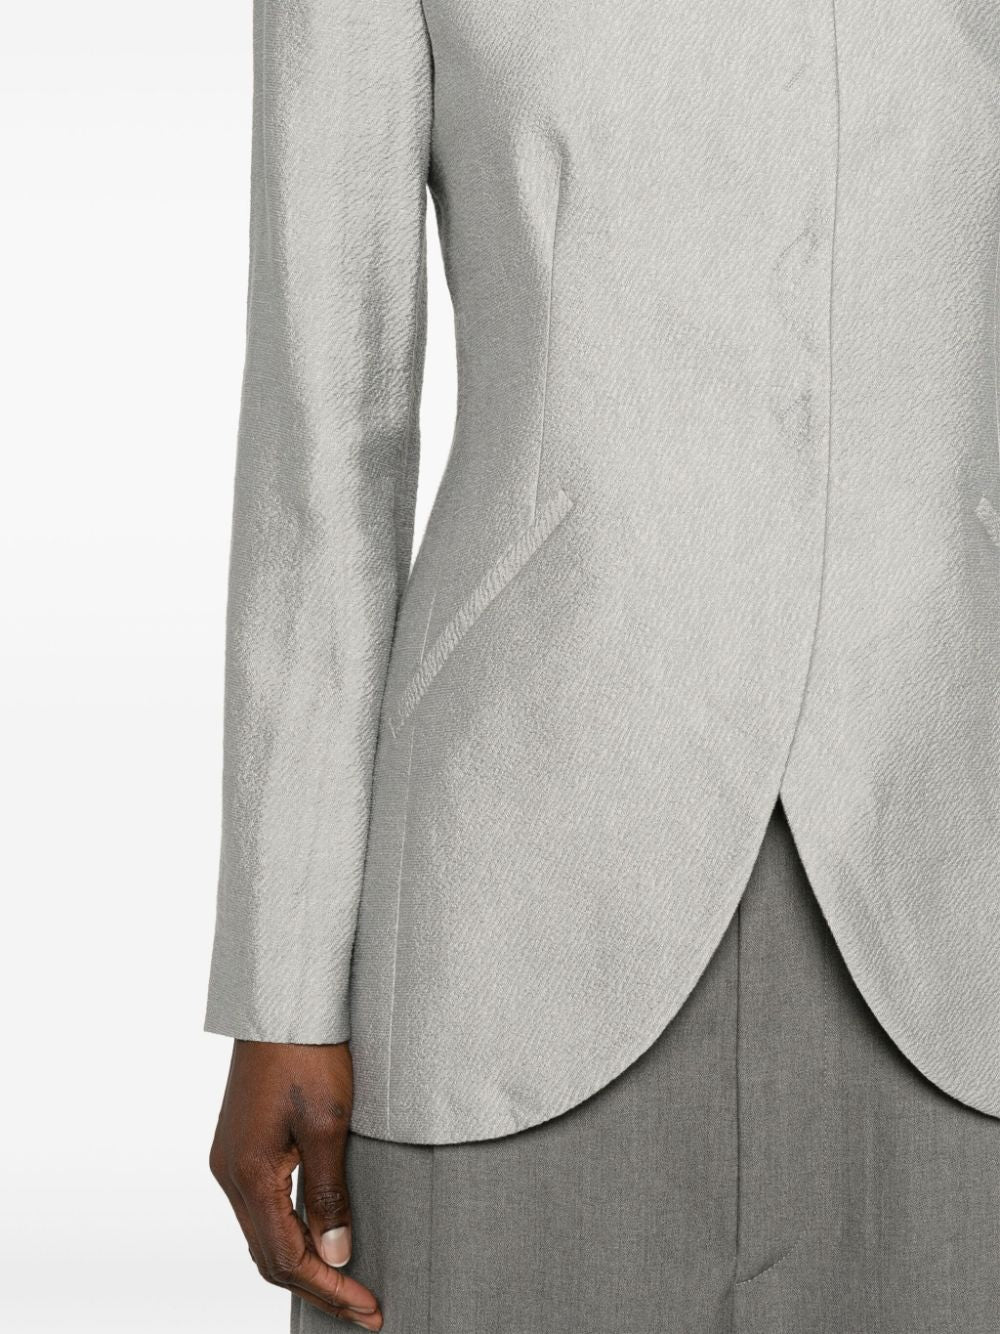 Áo Khoác Blazer Dệt Nổi Màu Xám Heather với Chi Tiết Nút và Đường May Tạo Form Dáng cho Nữ